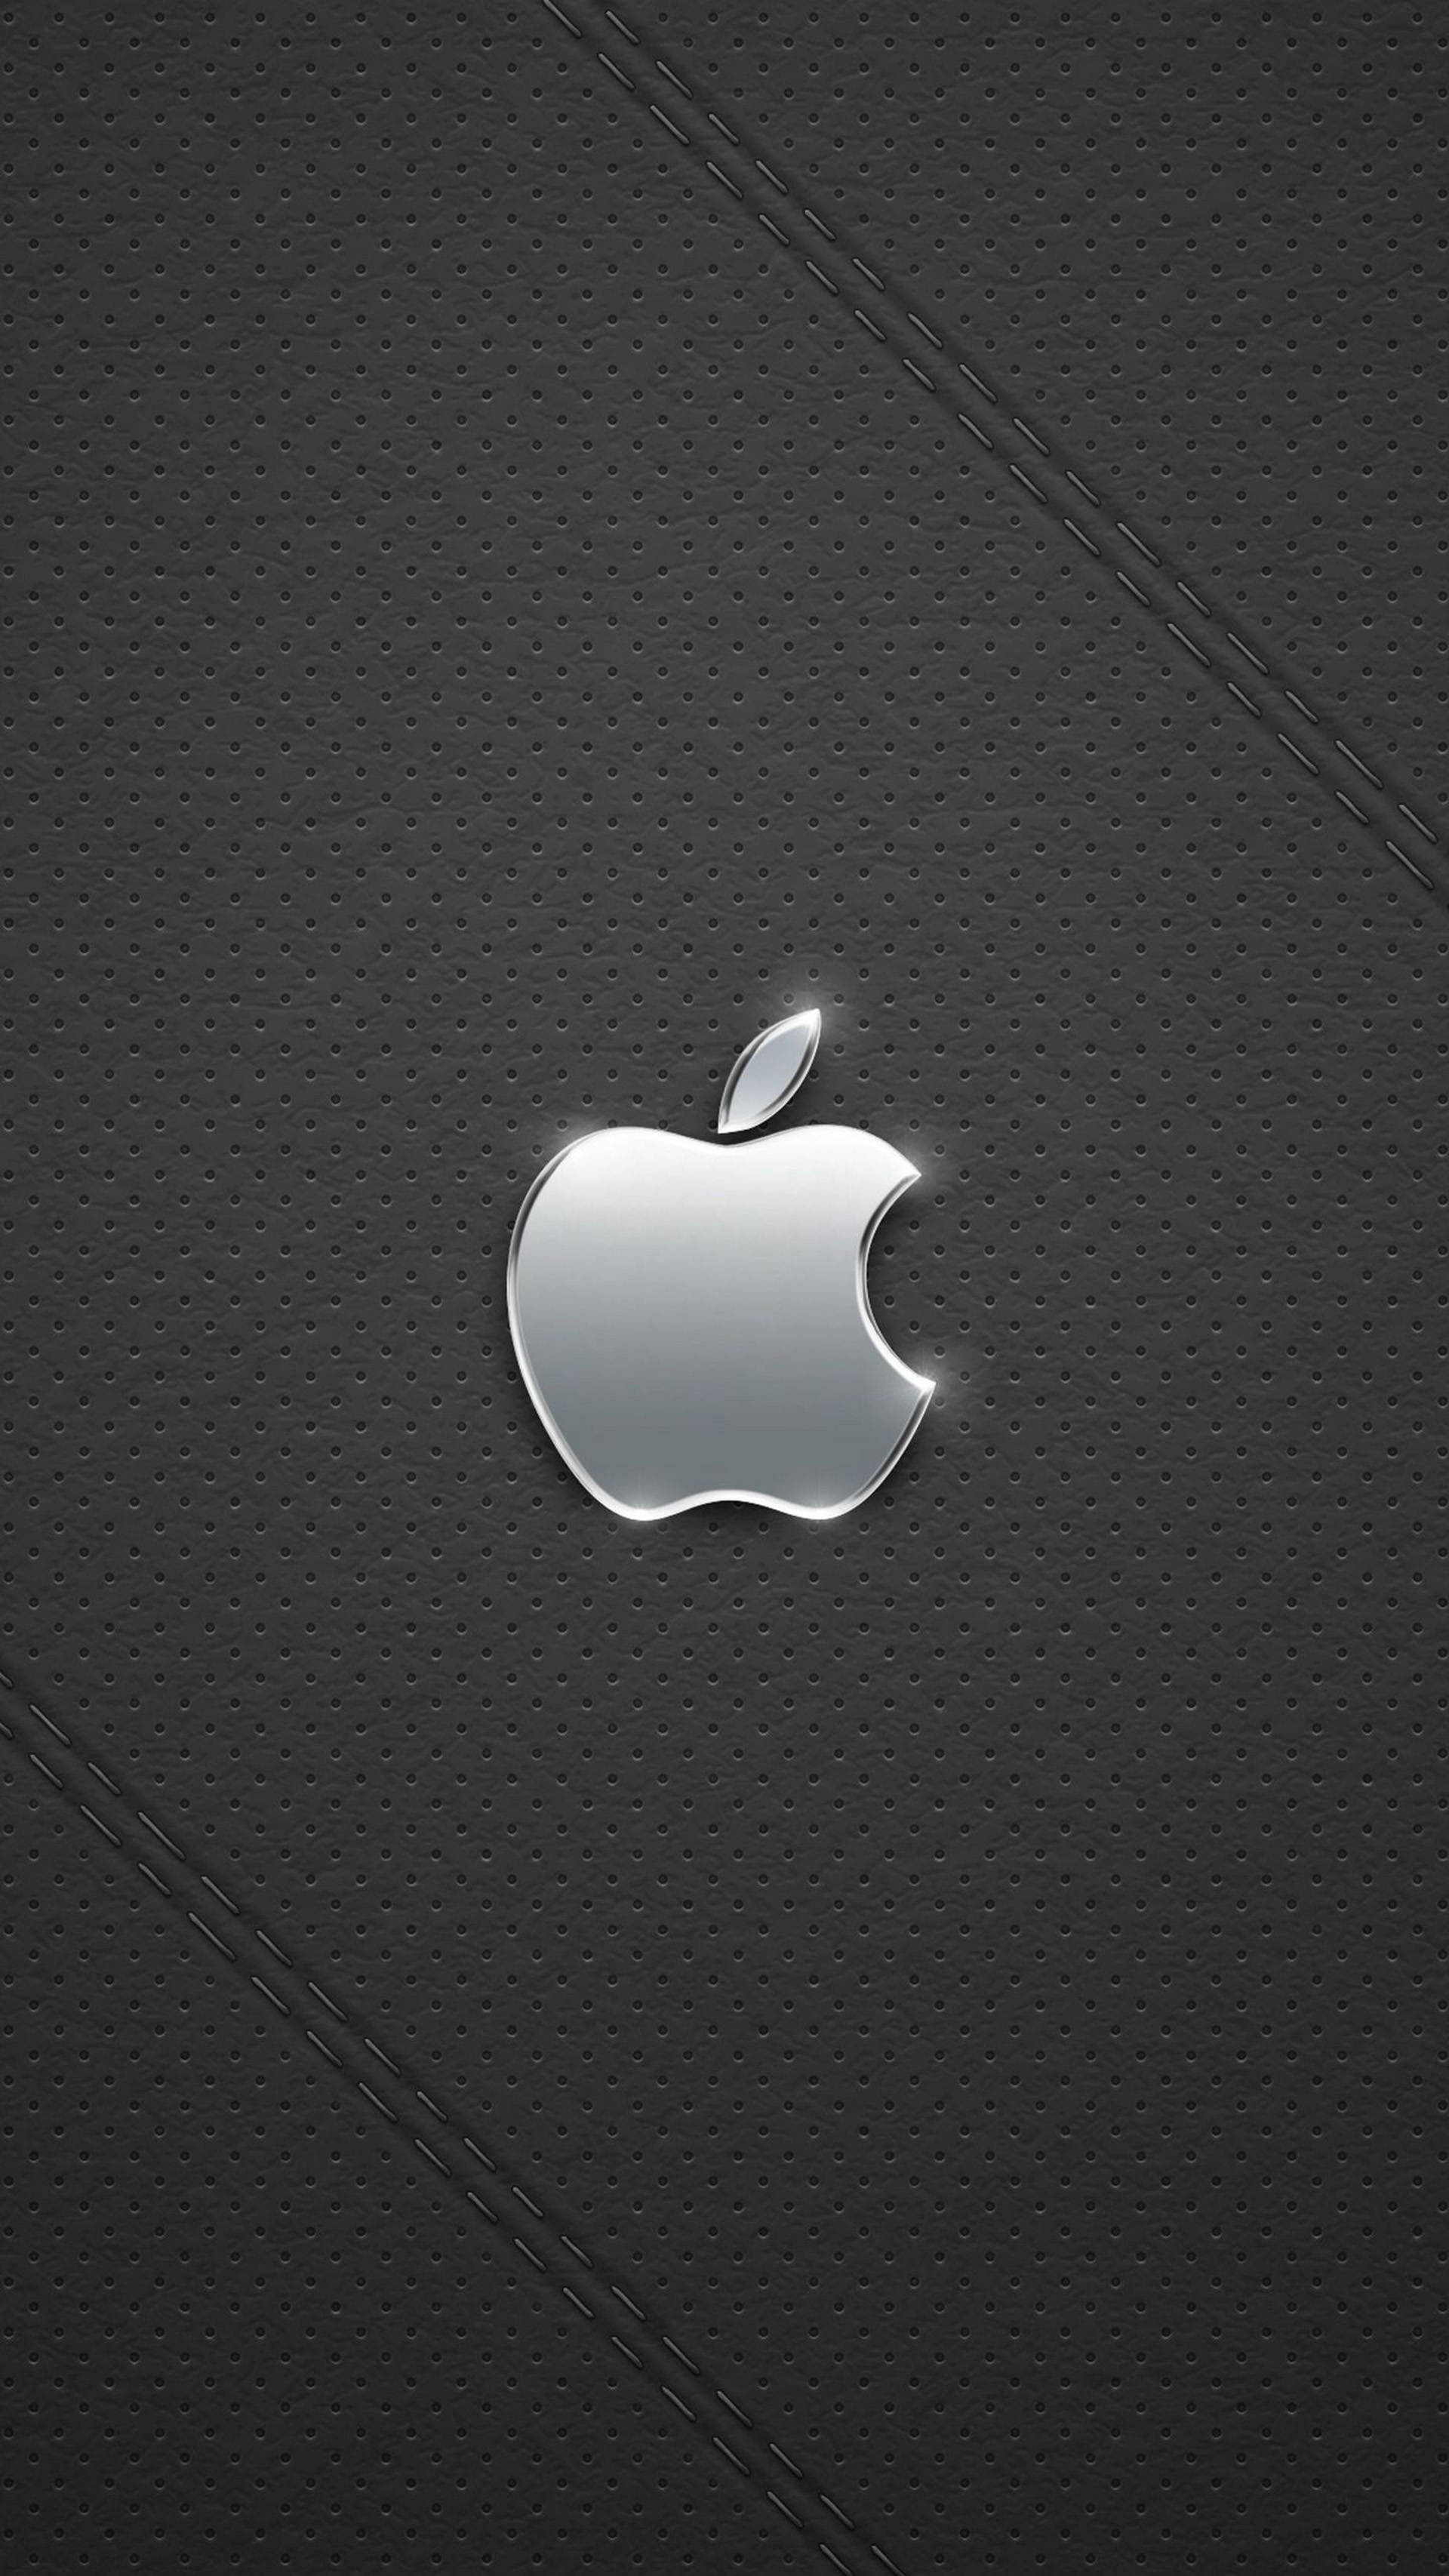 черный iphone с серебристым логотипом apple